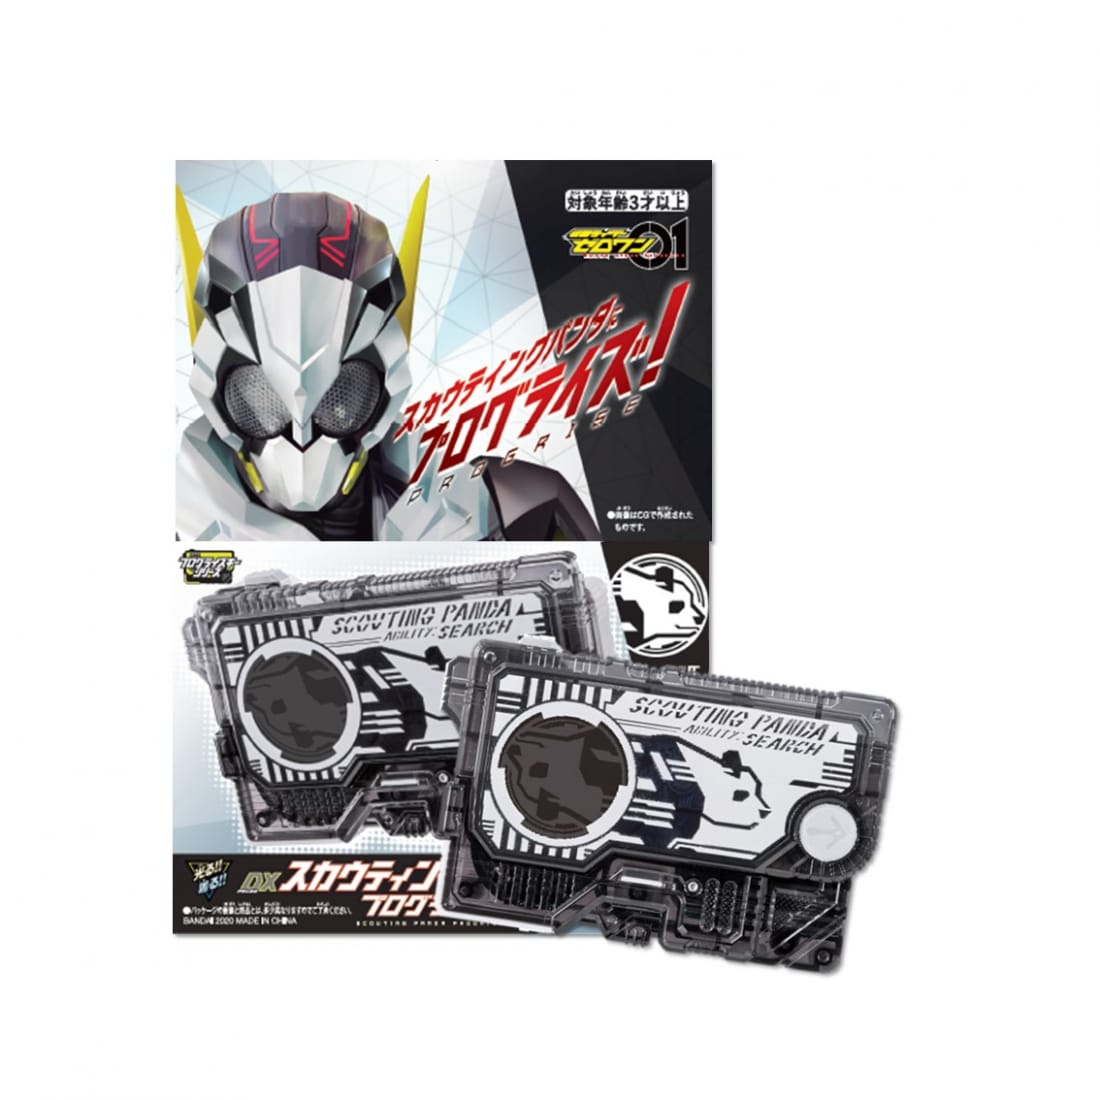 DX Scouting Panda Progrisekey Kamen Rider Tokyo Weekender Character Street Shopping Gift